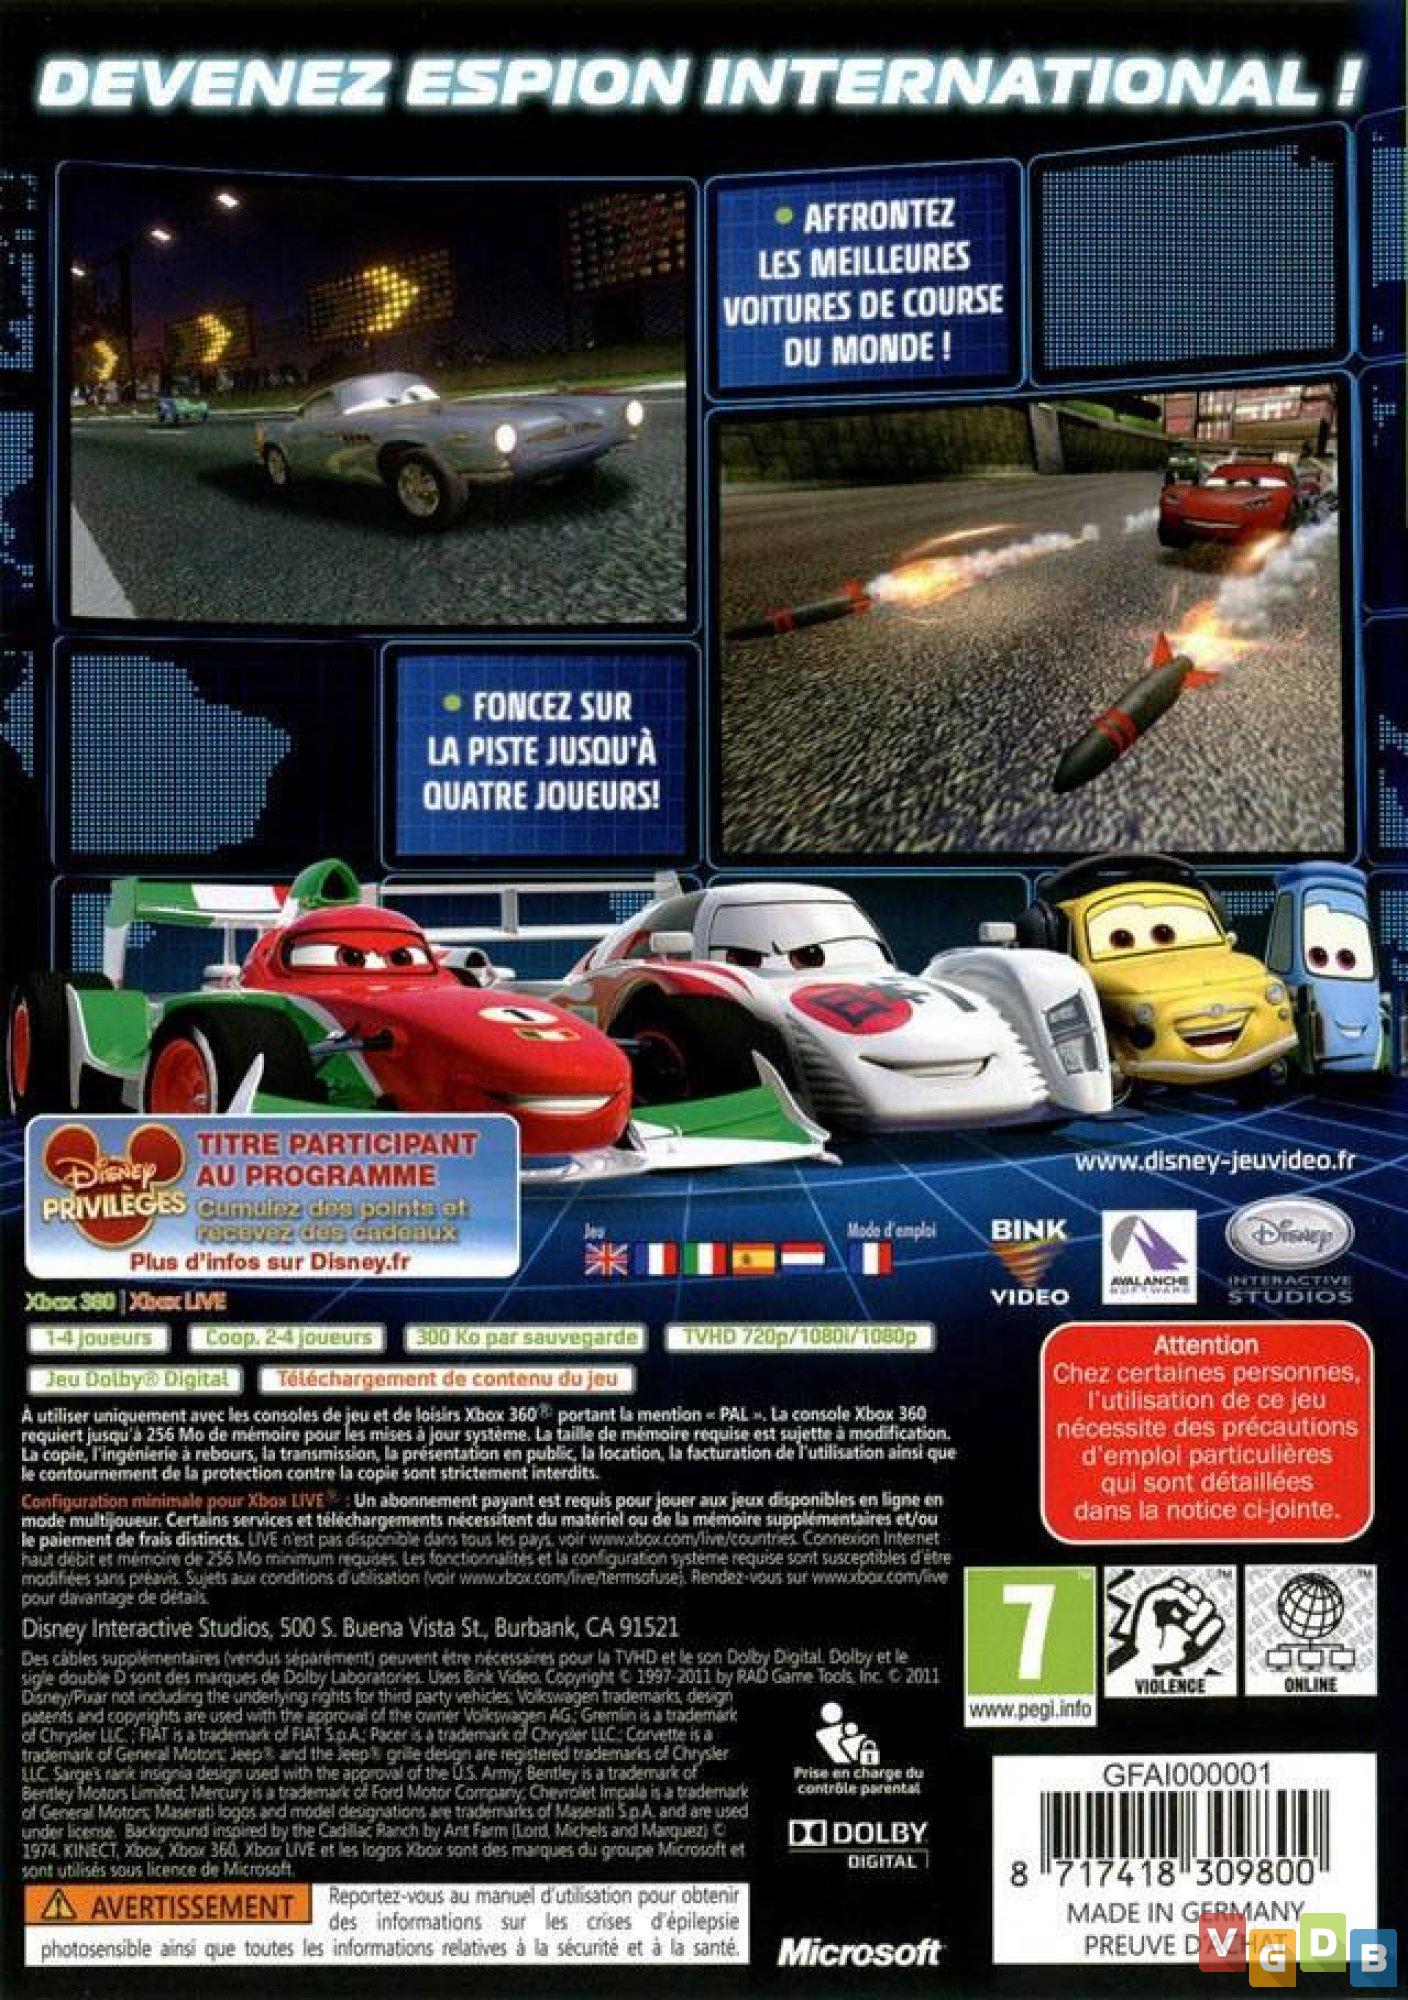 Carros 2 The Video Games - Jogo Original em Mida Digital Xbox 360